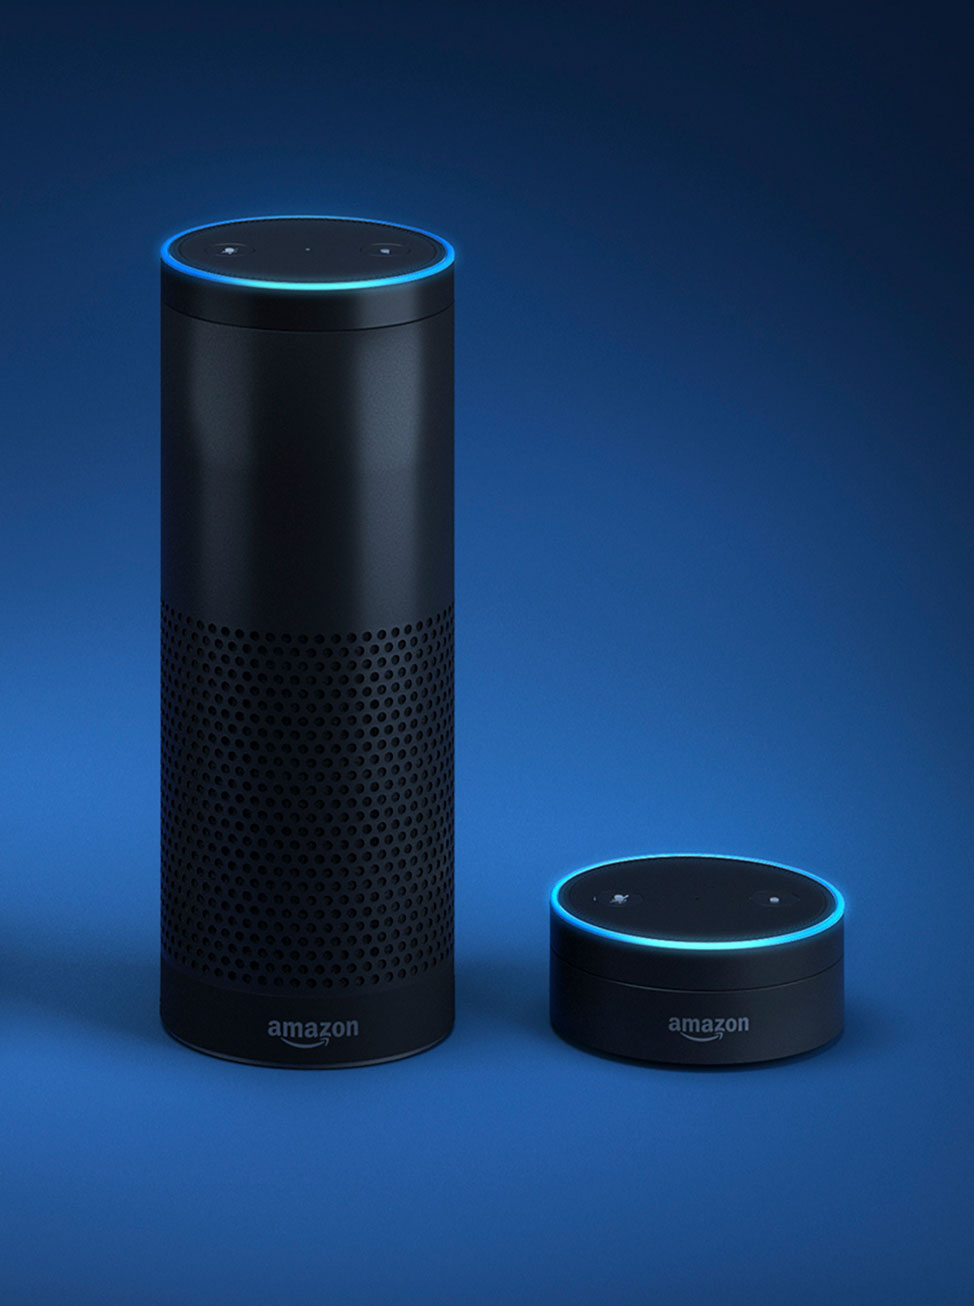 Amazon Echo Plus, and Amazon Echo Dot smart speakers